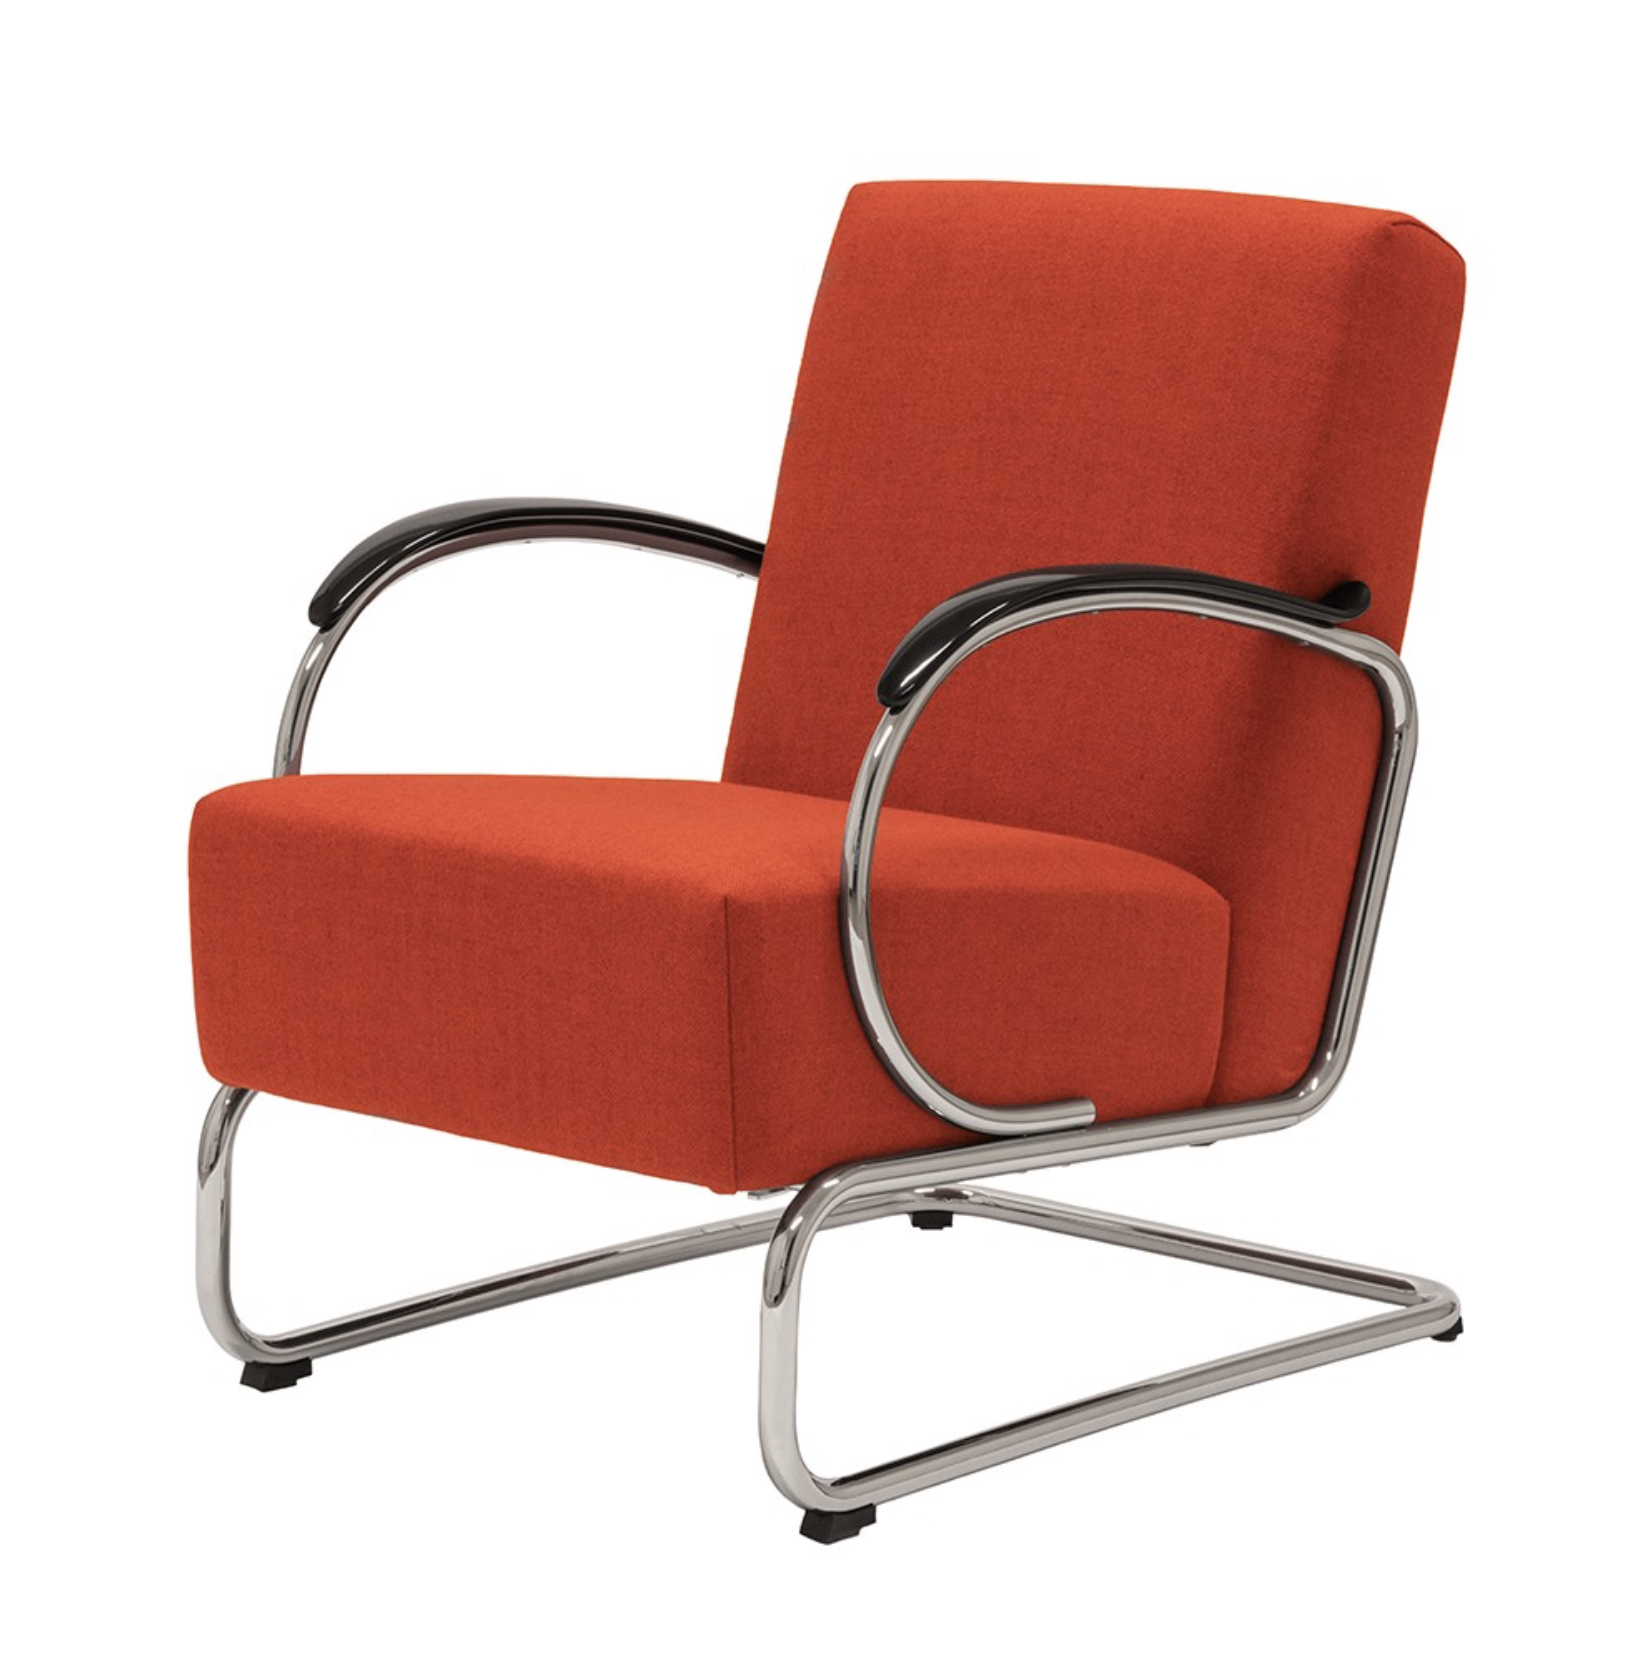 Dutch Originals Easy chair GISPEN 407